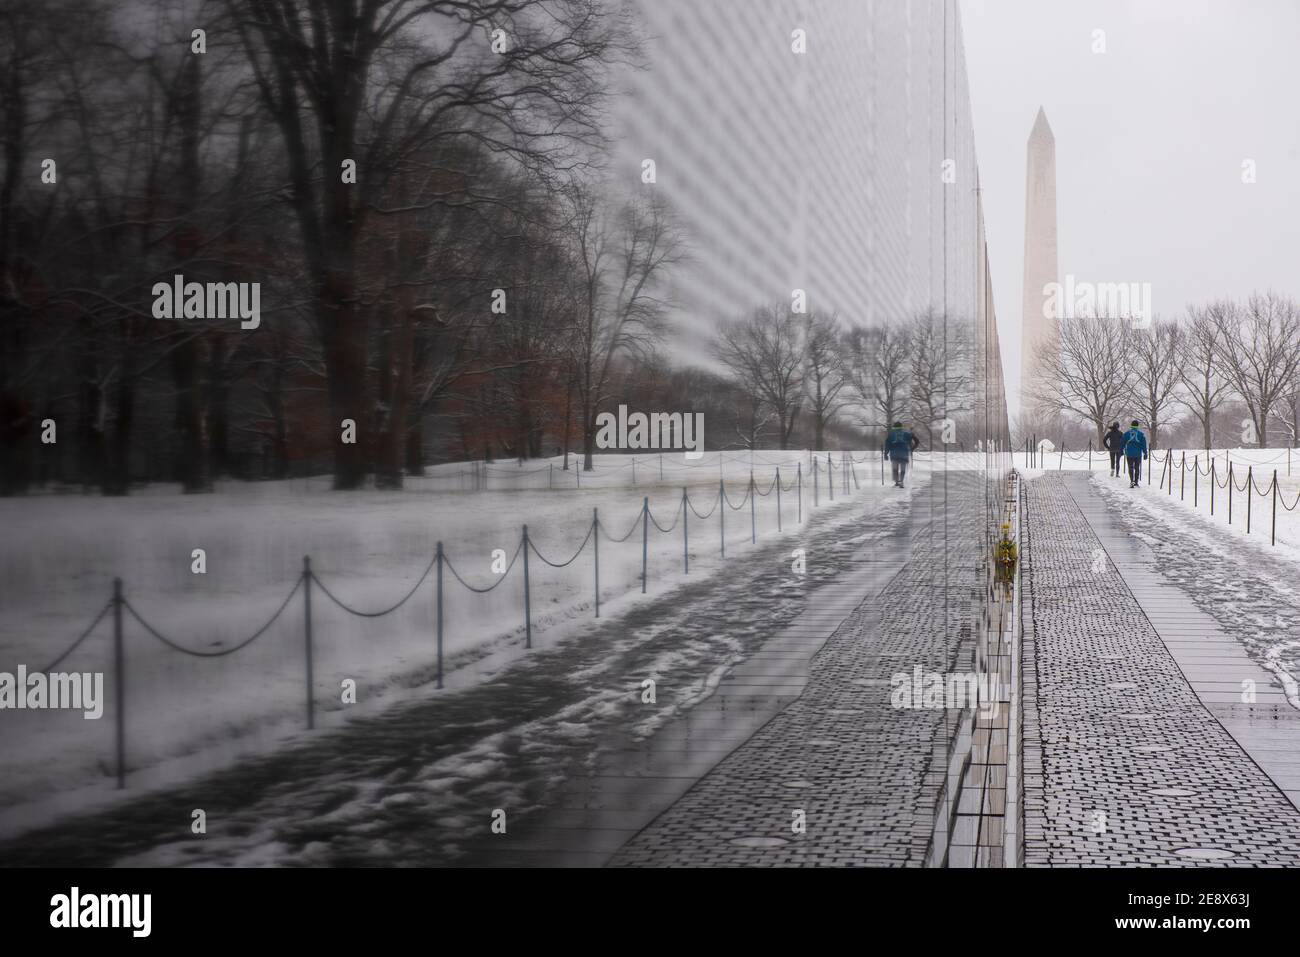 Una vista invernale del Vietnam Veterans Memorial durante una giornata innevata a Washington, D.C. il Washington Monument può essere visto in lontananza. Foto Stock